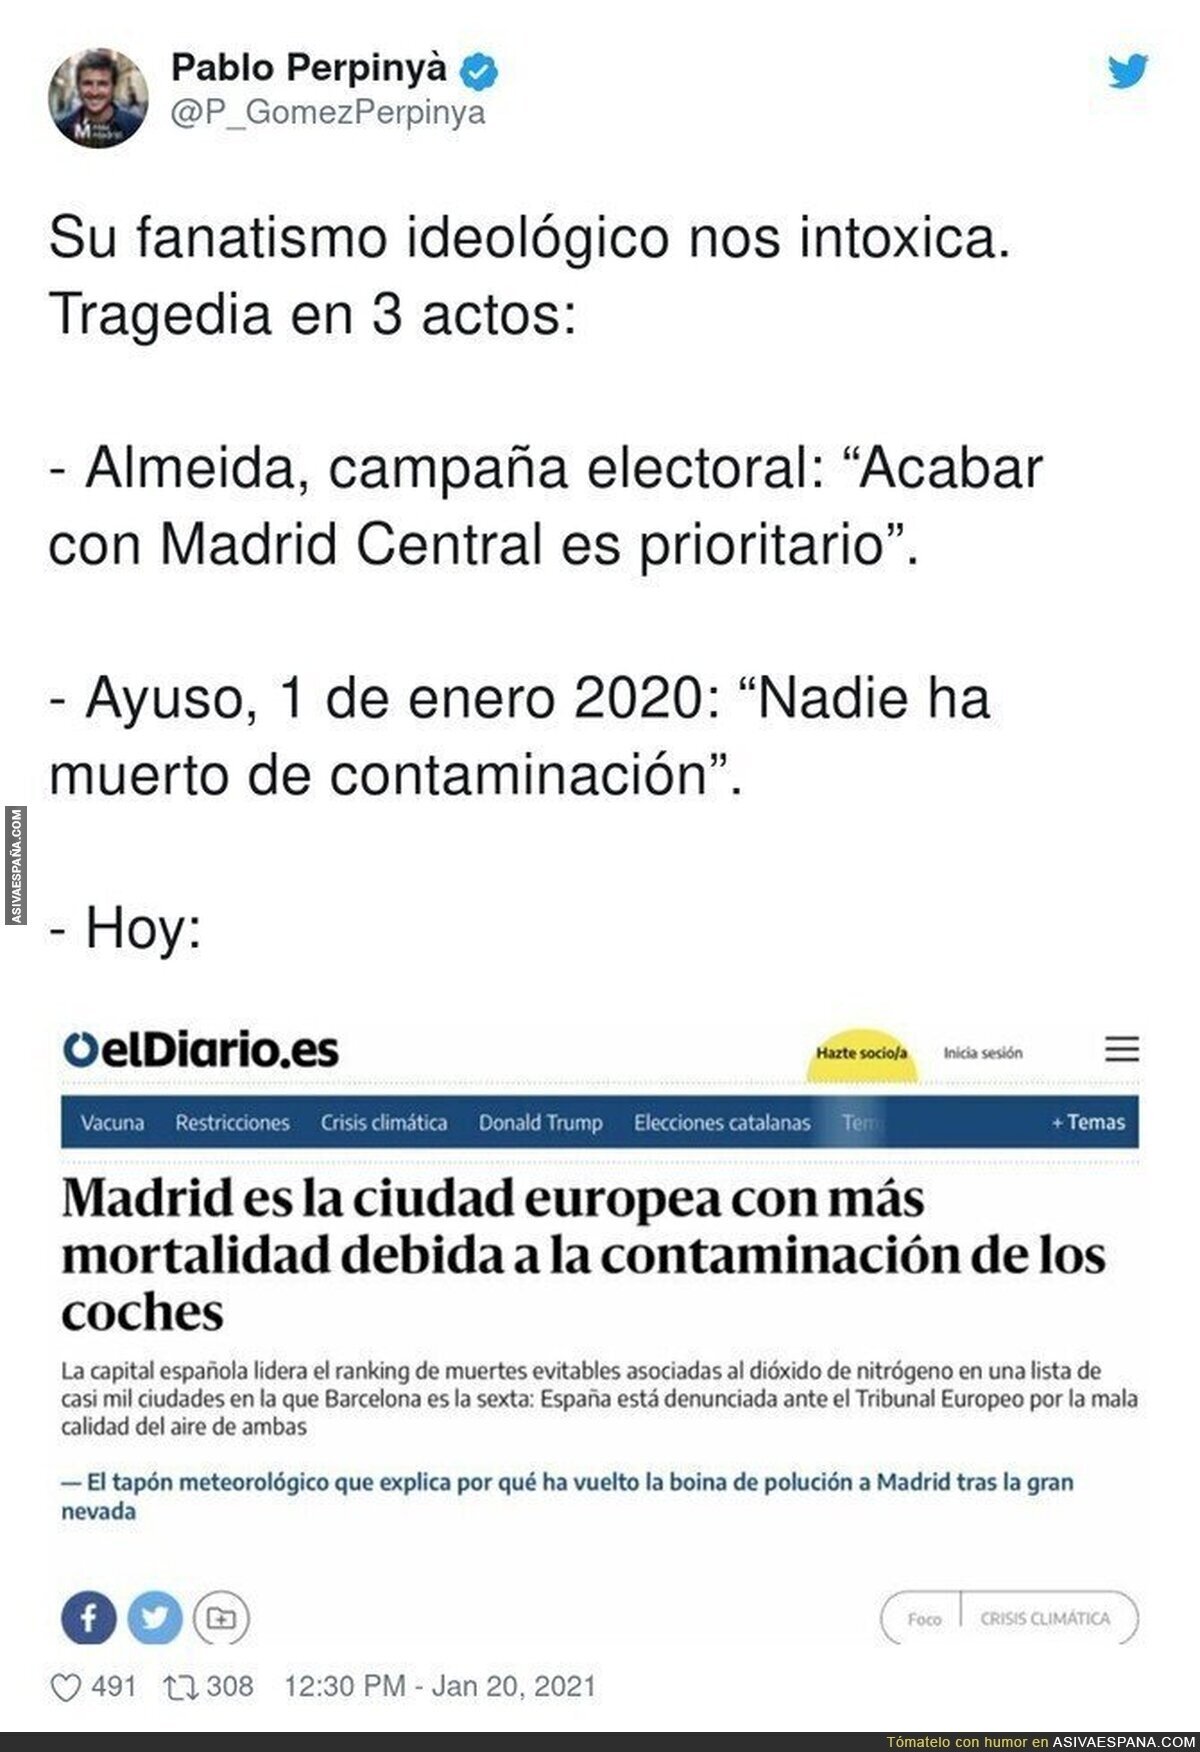 Madrid es un peligro para todos